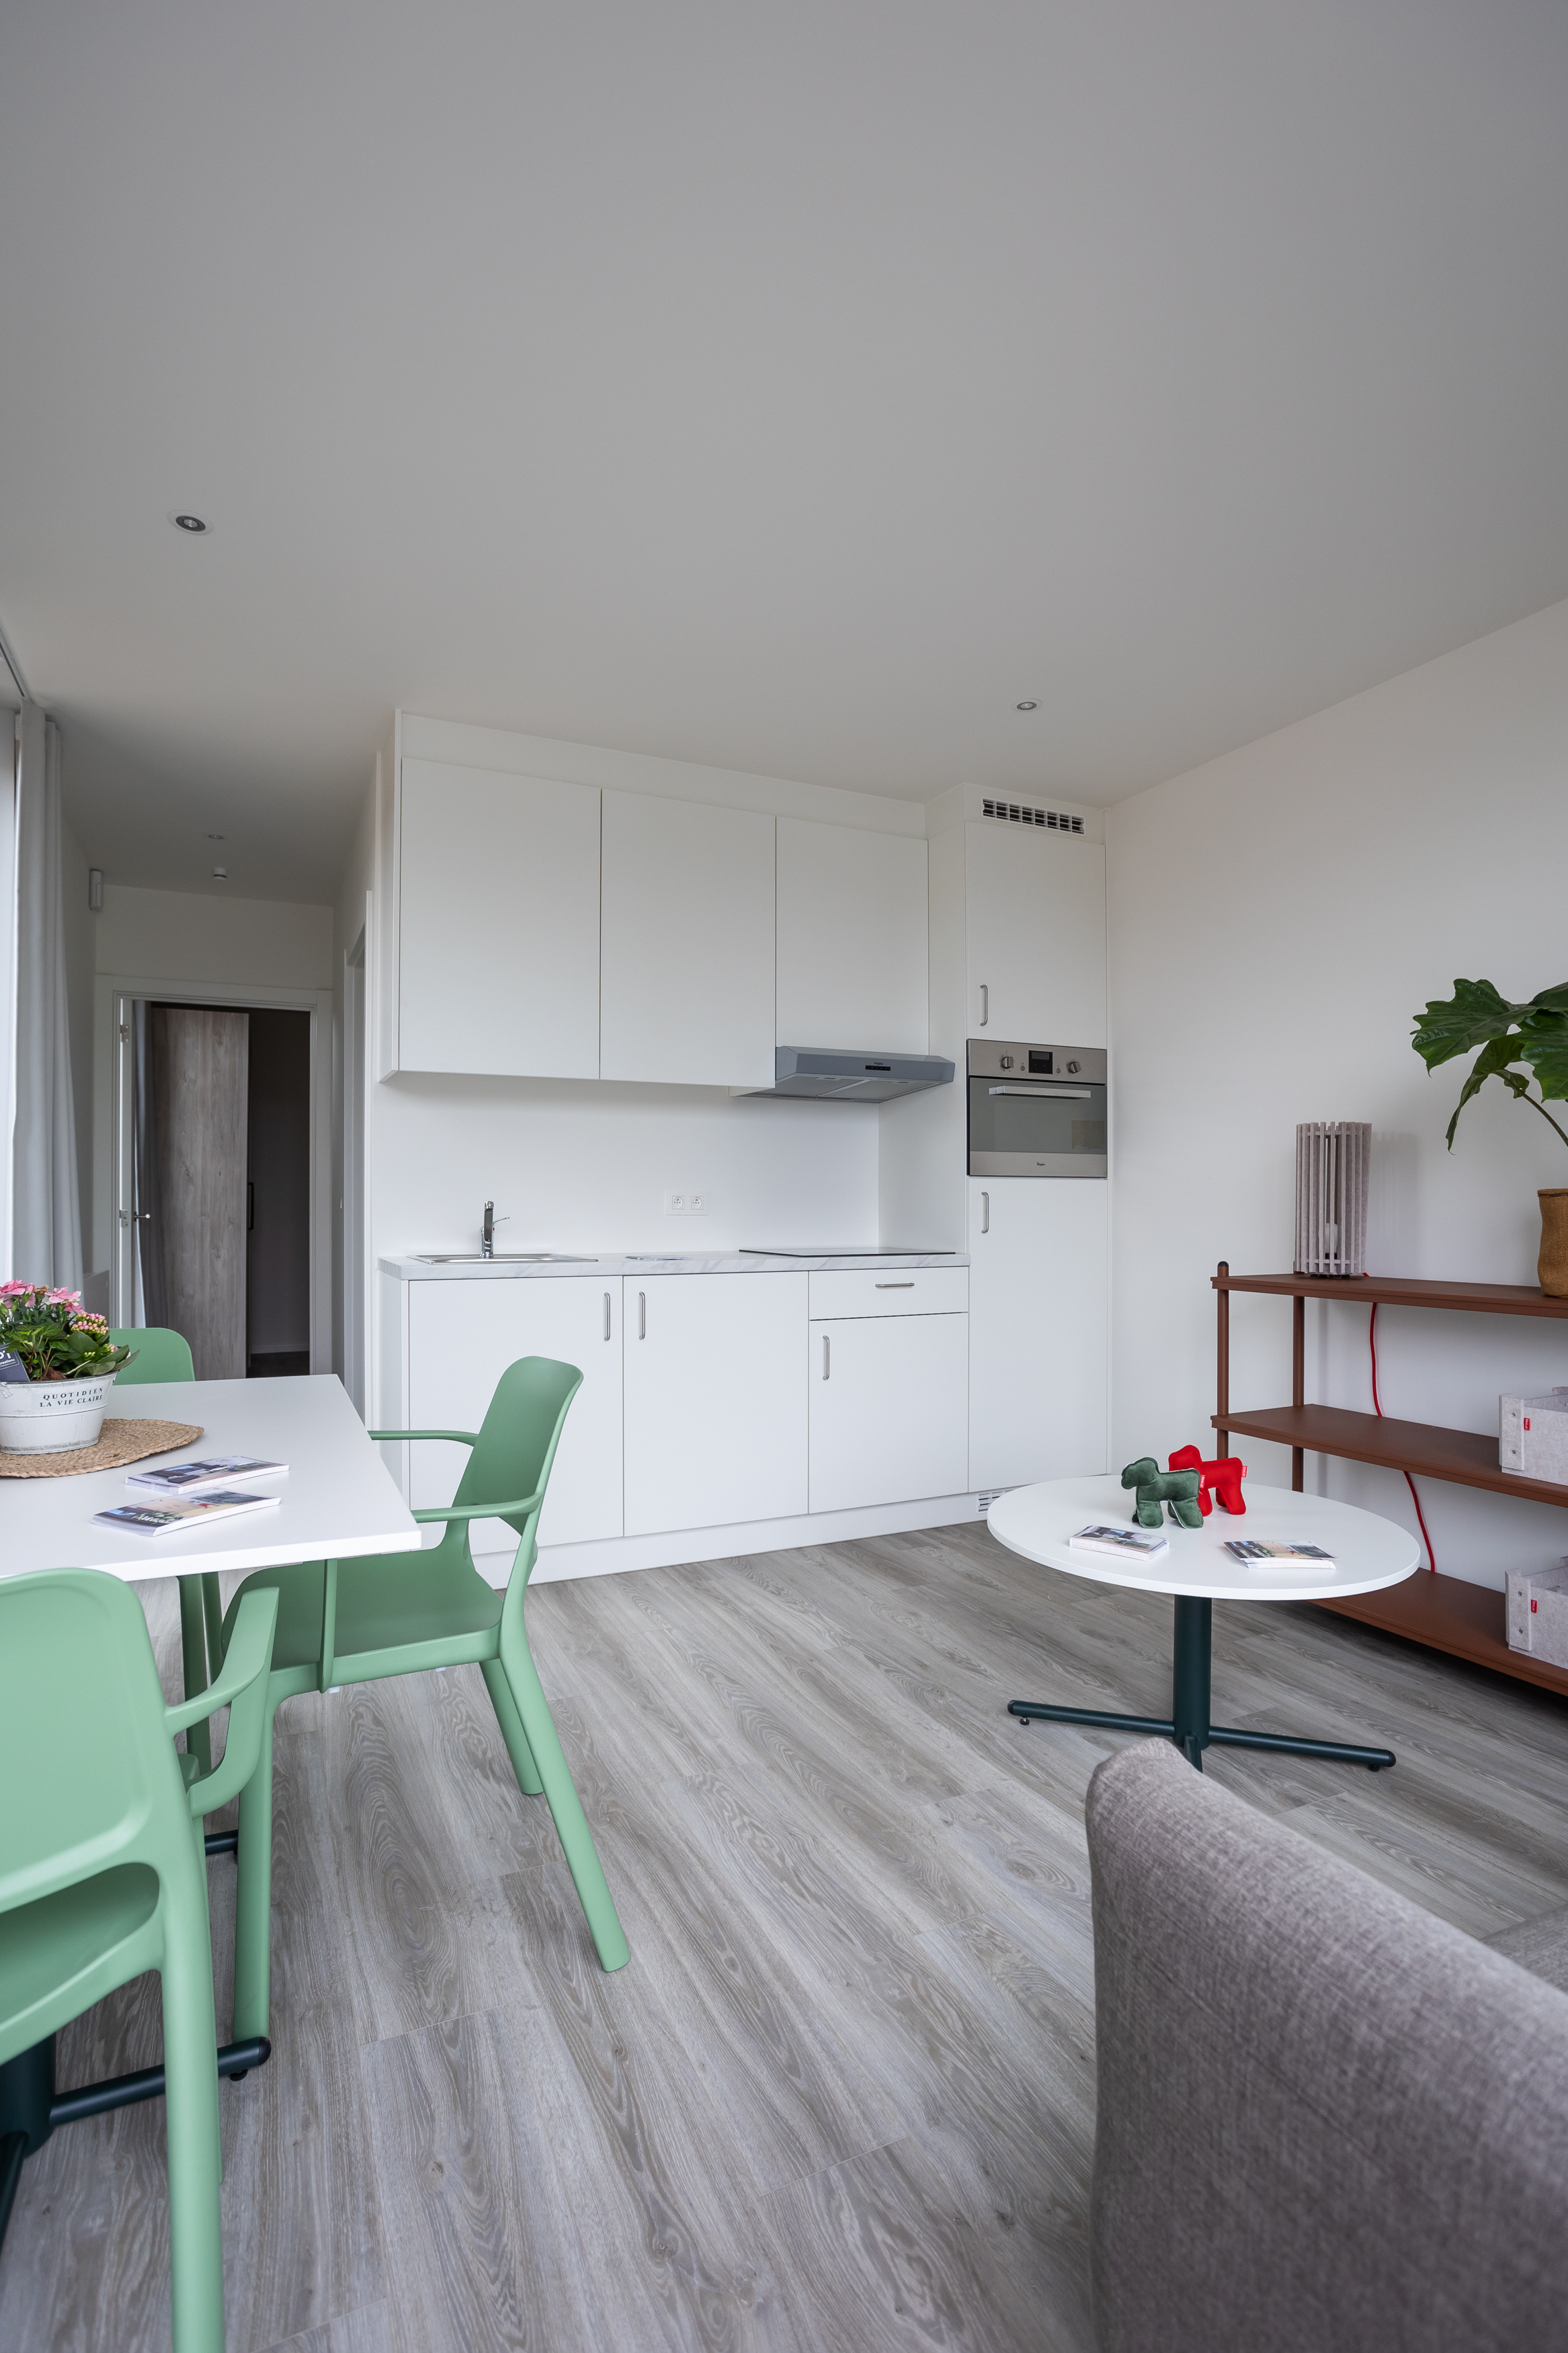 keuken en leefruimte van een huis voor vluchtelingen in Hasselt